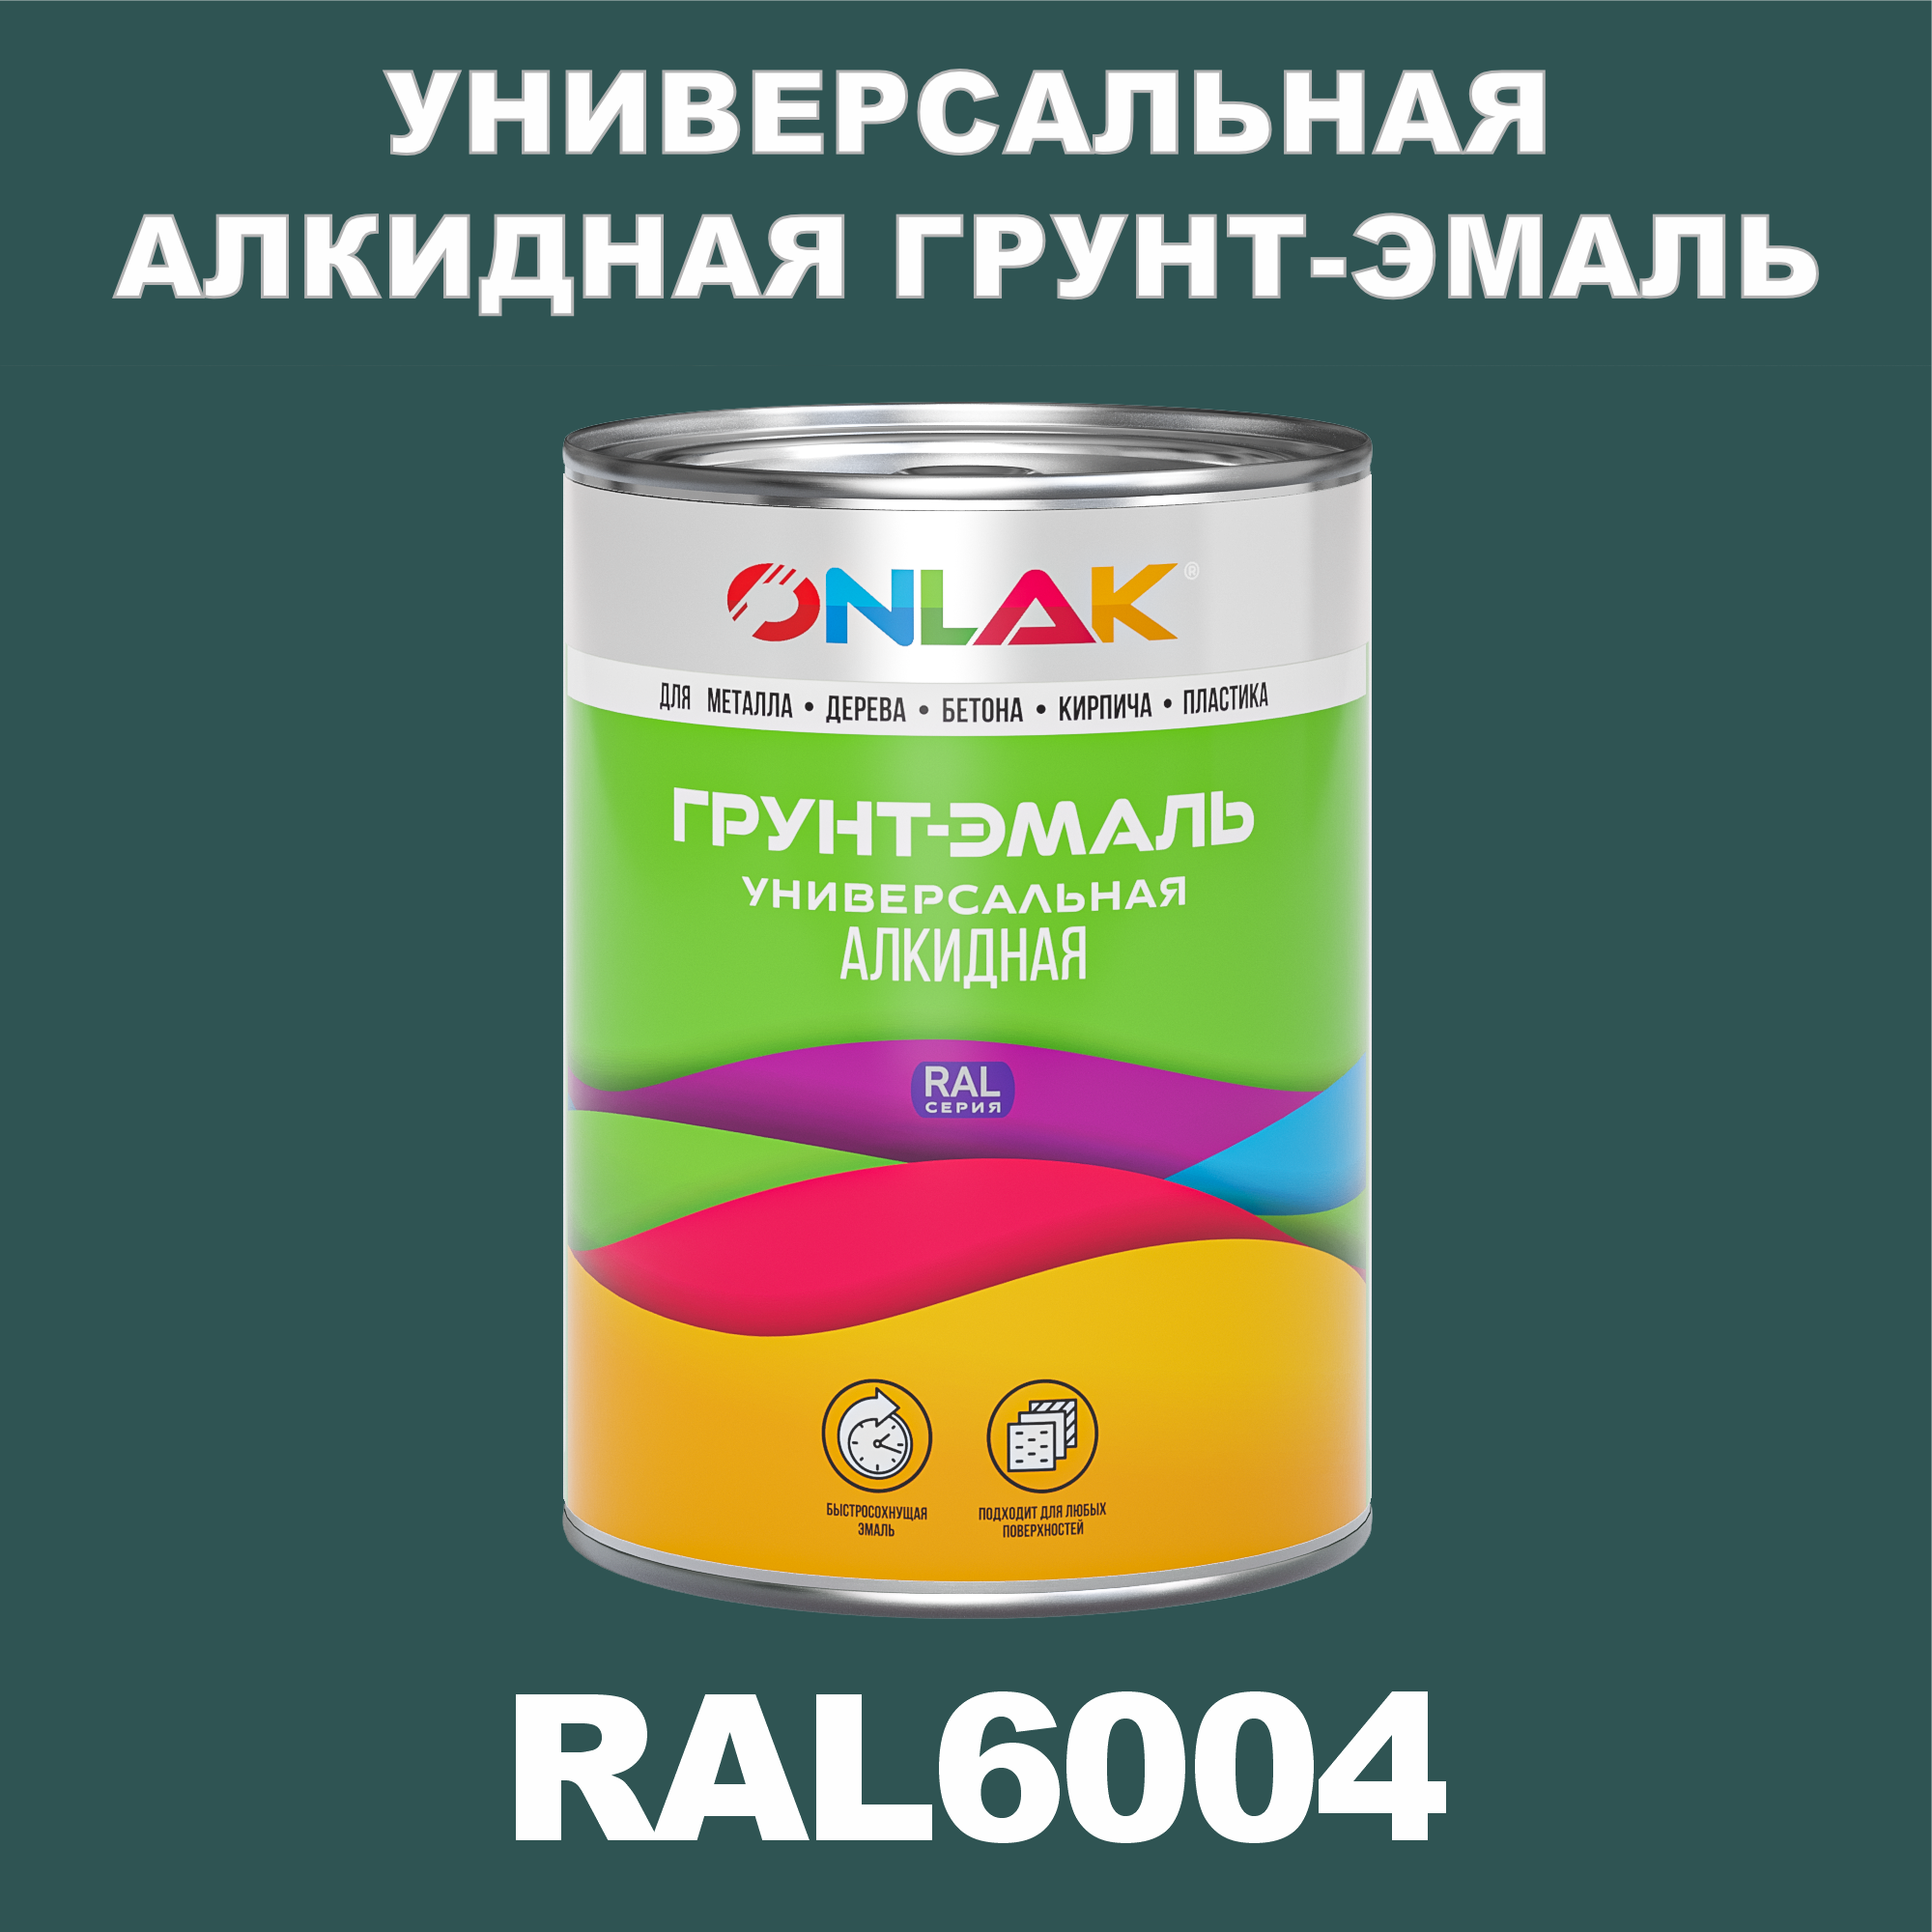 Грунт-эмаль ONLAK 1К RAL6004 антикоррозионная алкидная по металлу по ржавчине 1 кг грунт эмаль yollo по ржавчине алкидная серая 0 9 кг